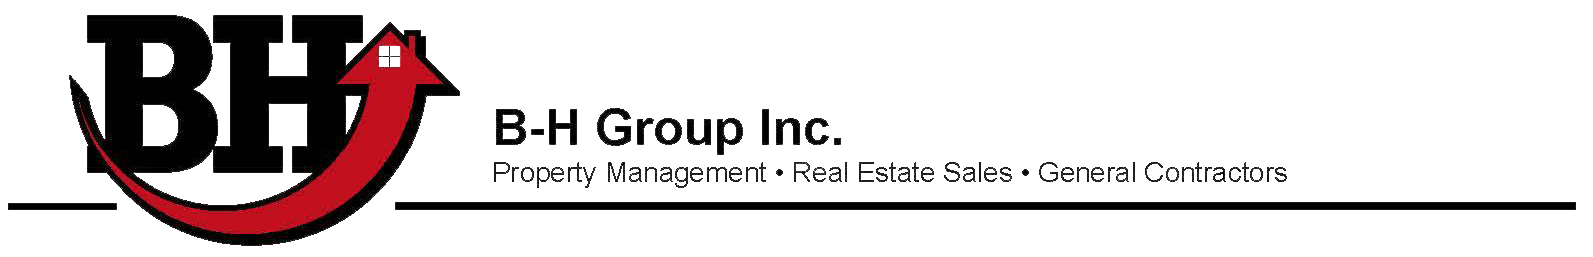 B-H Group, Inc. Logo